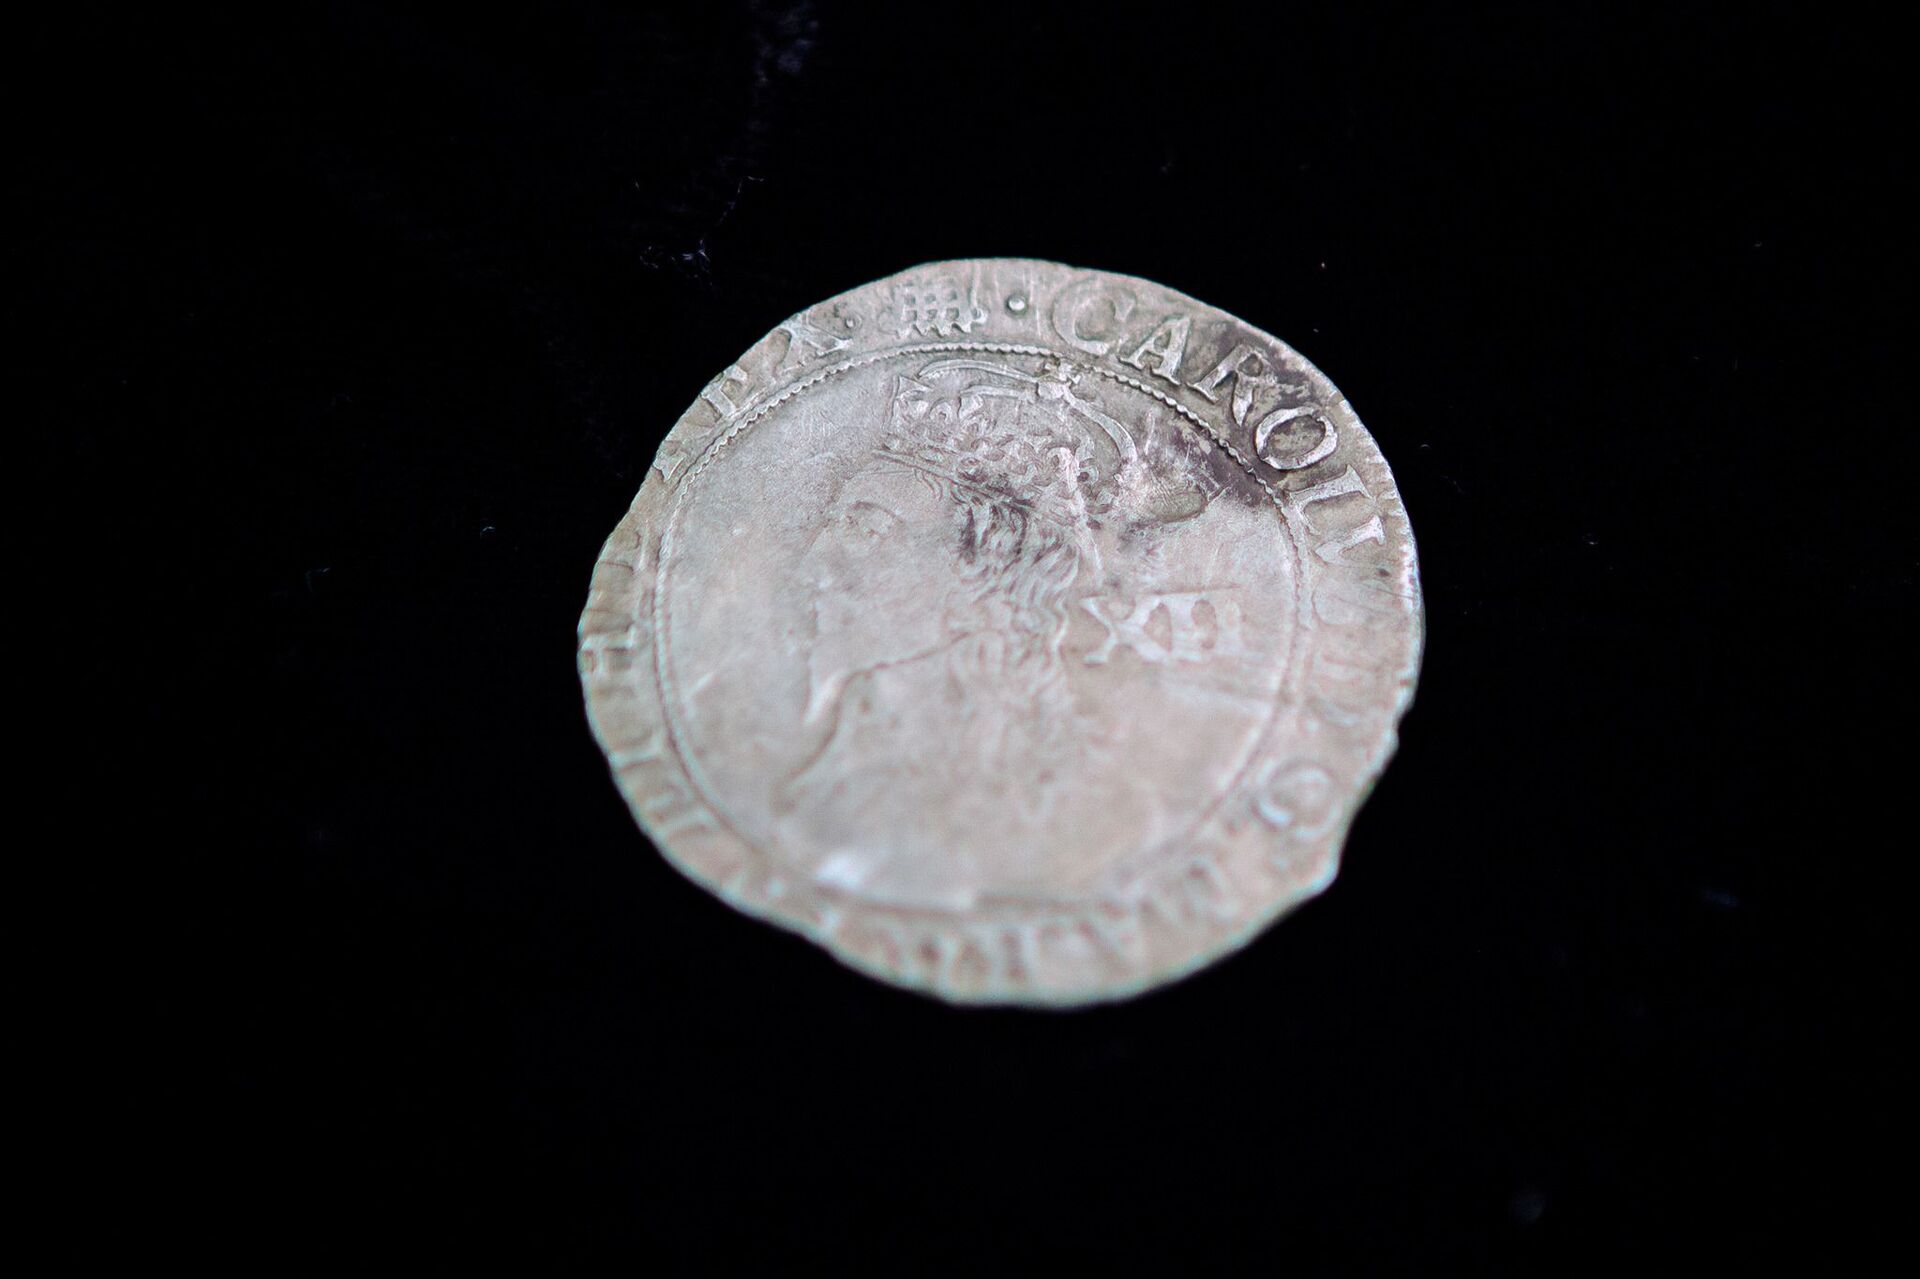 Rara moeda britânica do século XVII é encontrada nos EUA (FOTO) - Sputnik Brasil, 1920, 05.05.2021